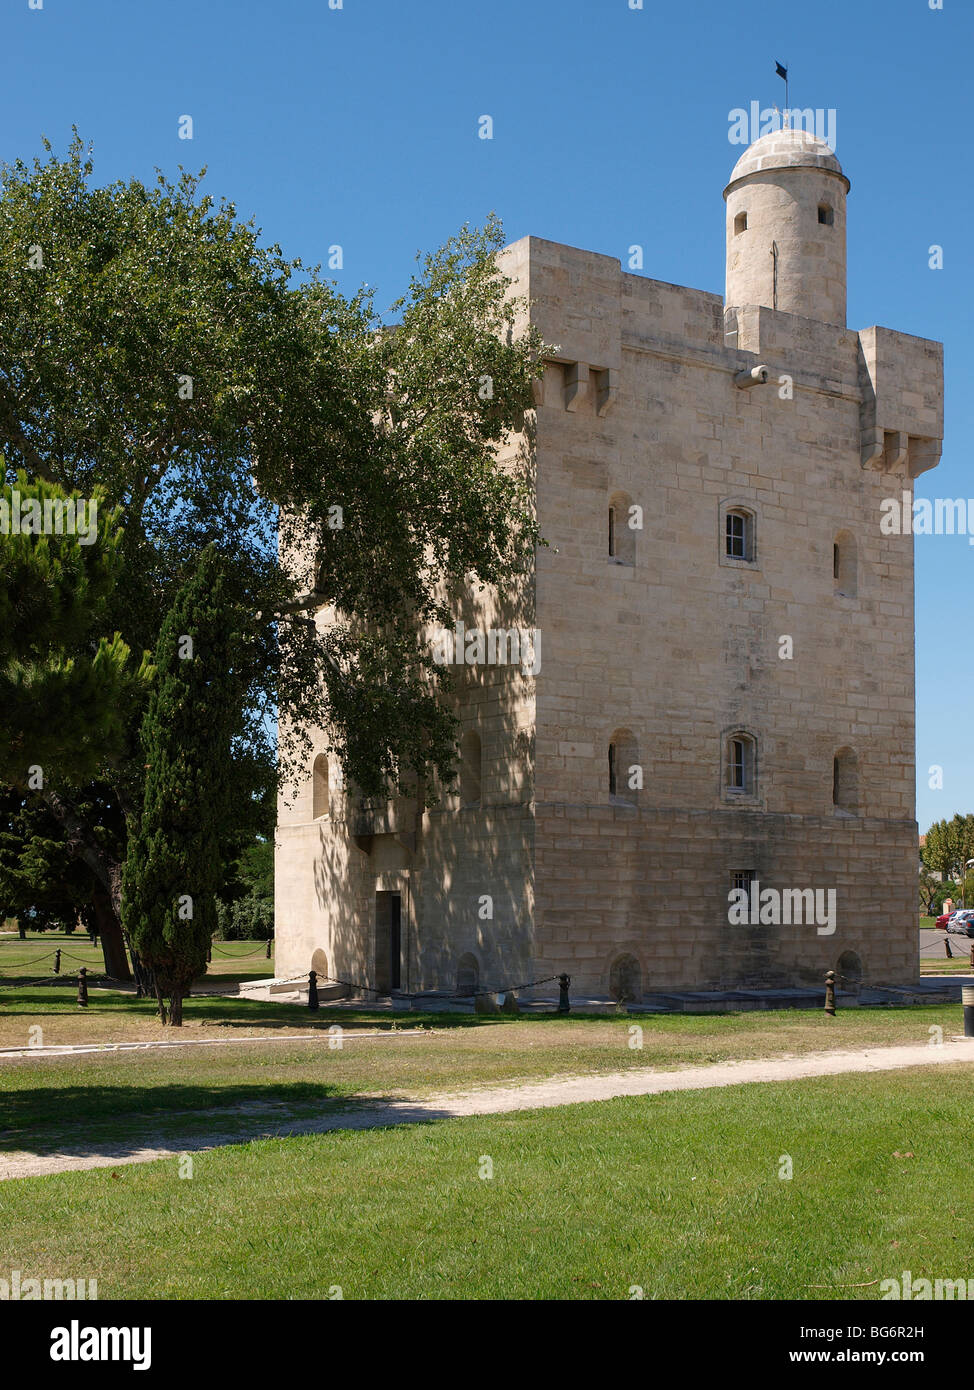 castle in Port St Louis du Rhone, Camargue Stock Photo - Alamy